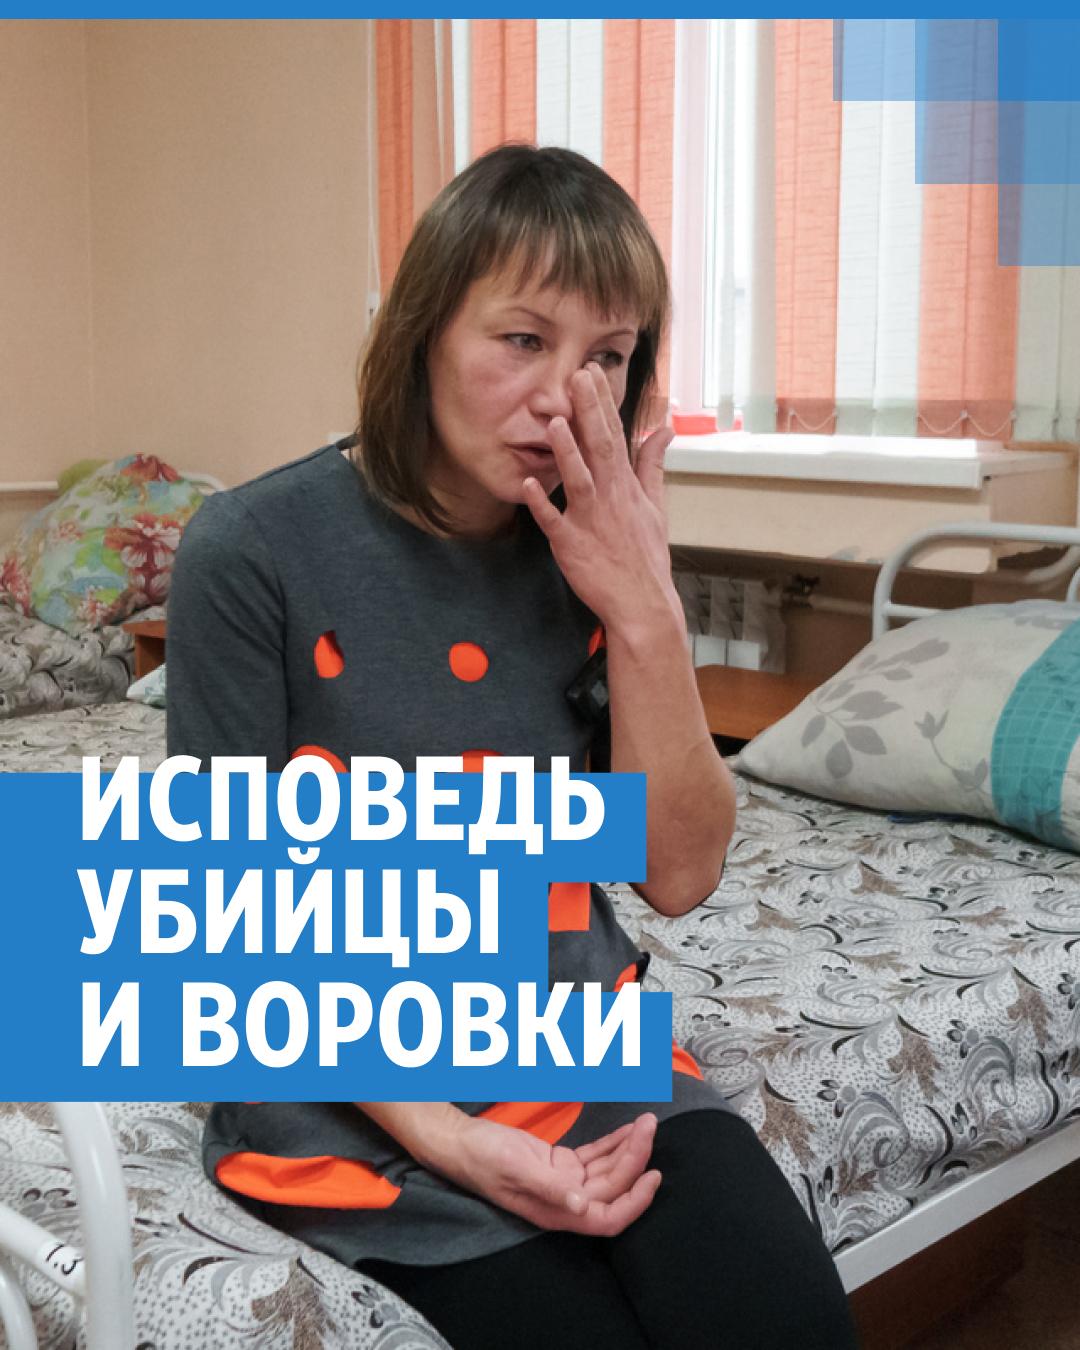 Секс в русской женской тюрьме - порно видео смотреть онлайн на ecomamochka.ru